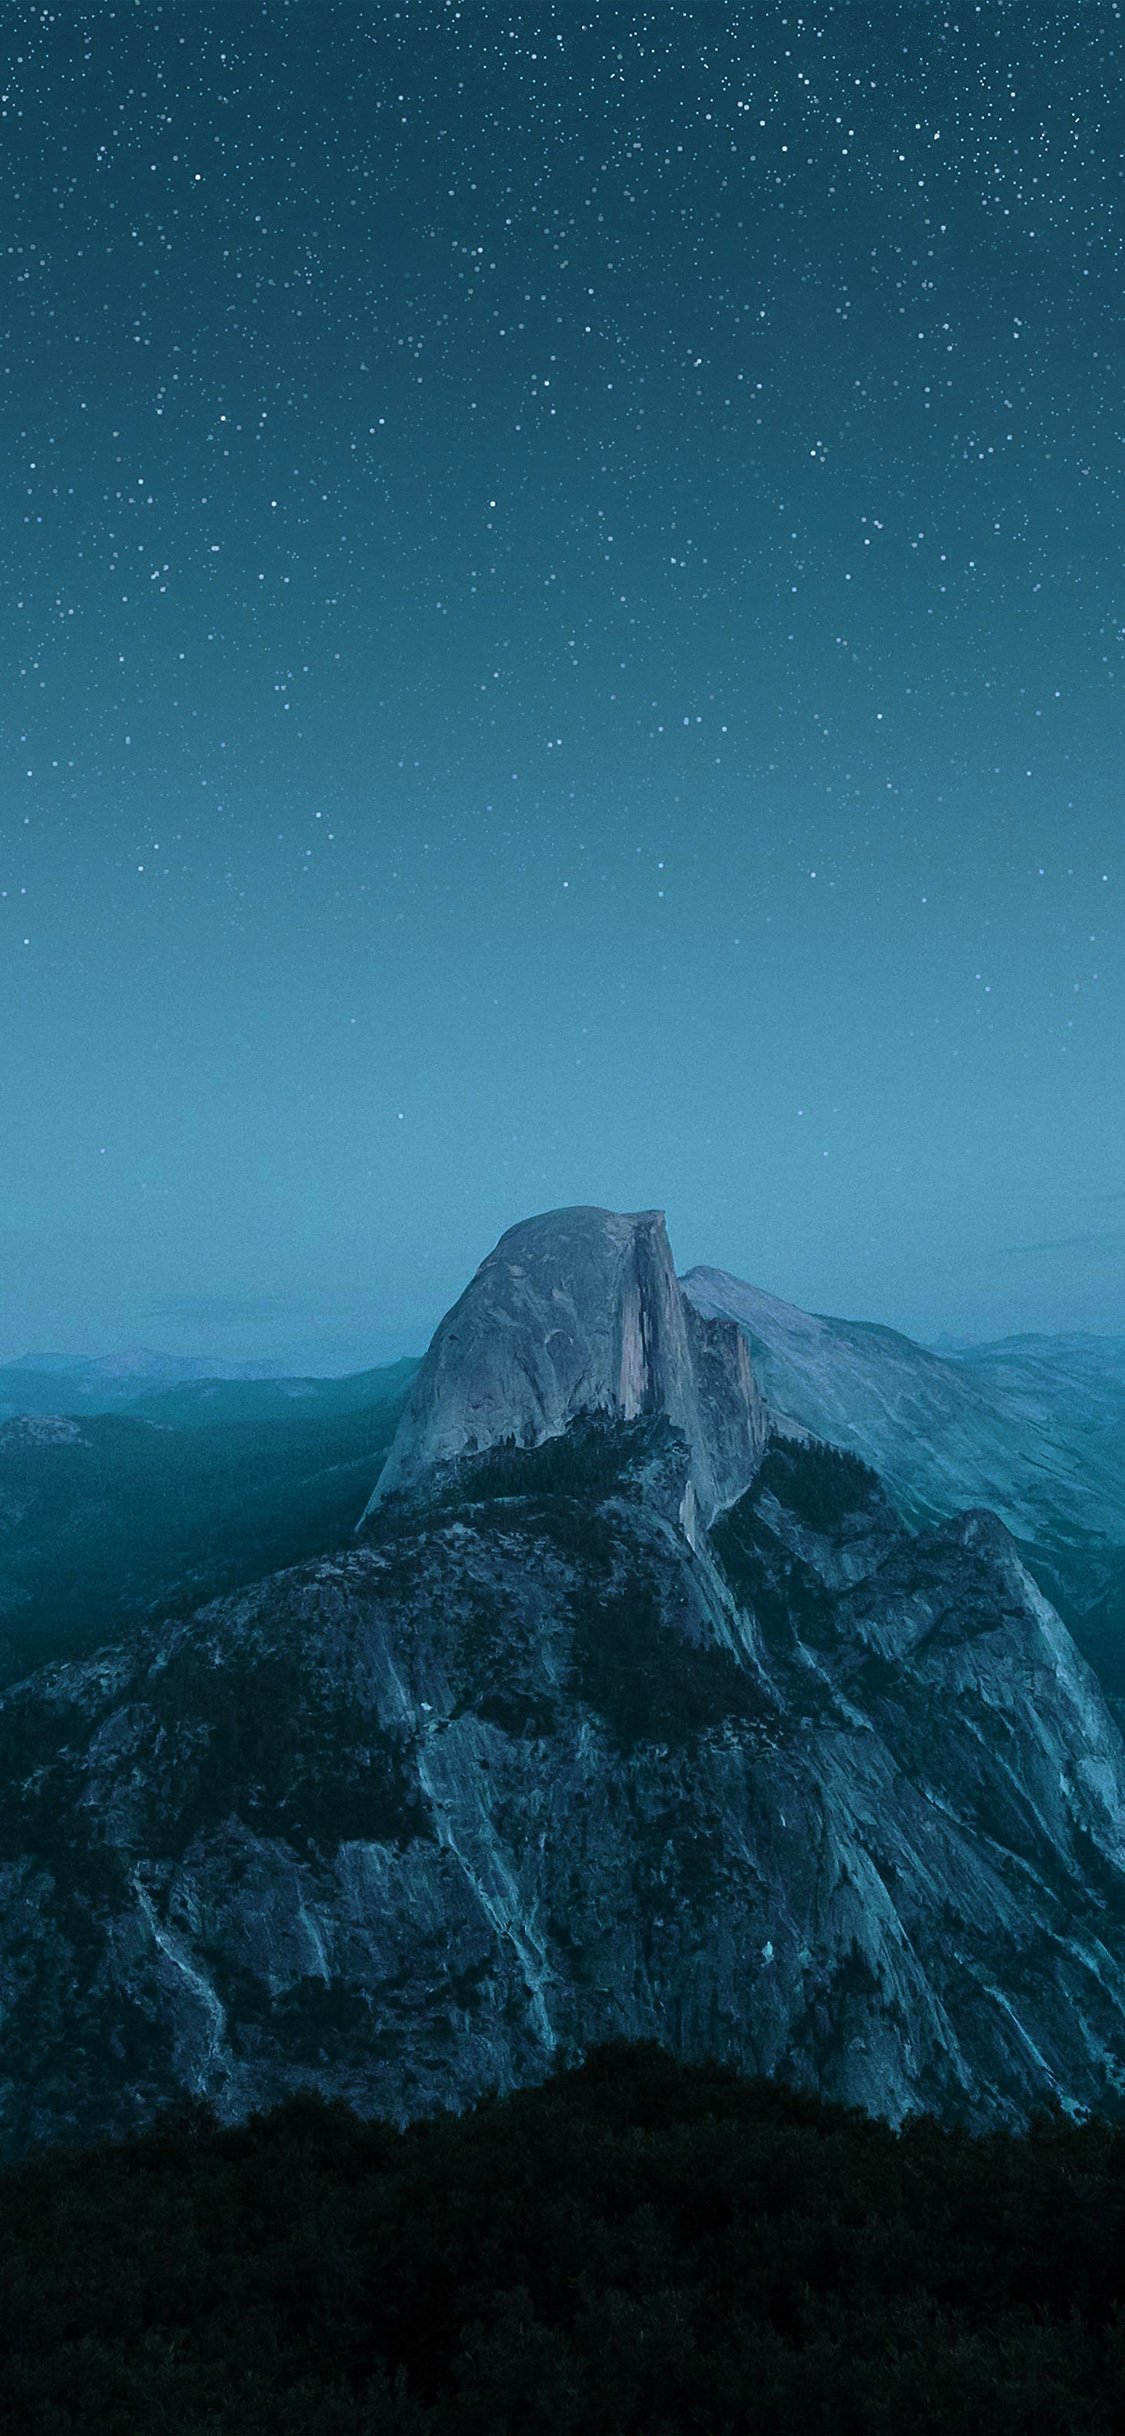 星空下的磅礴石头大山唯美摄影手机壁纸